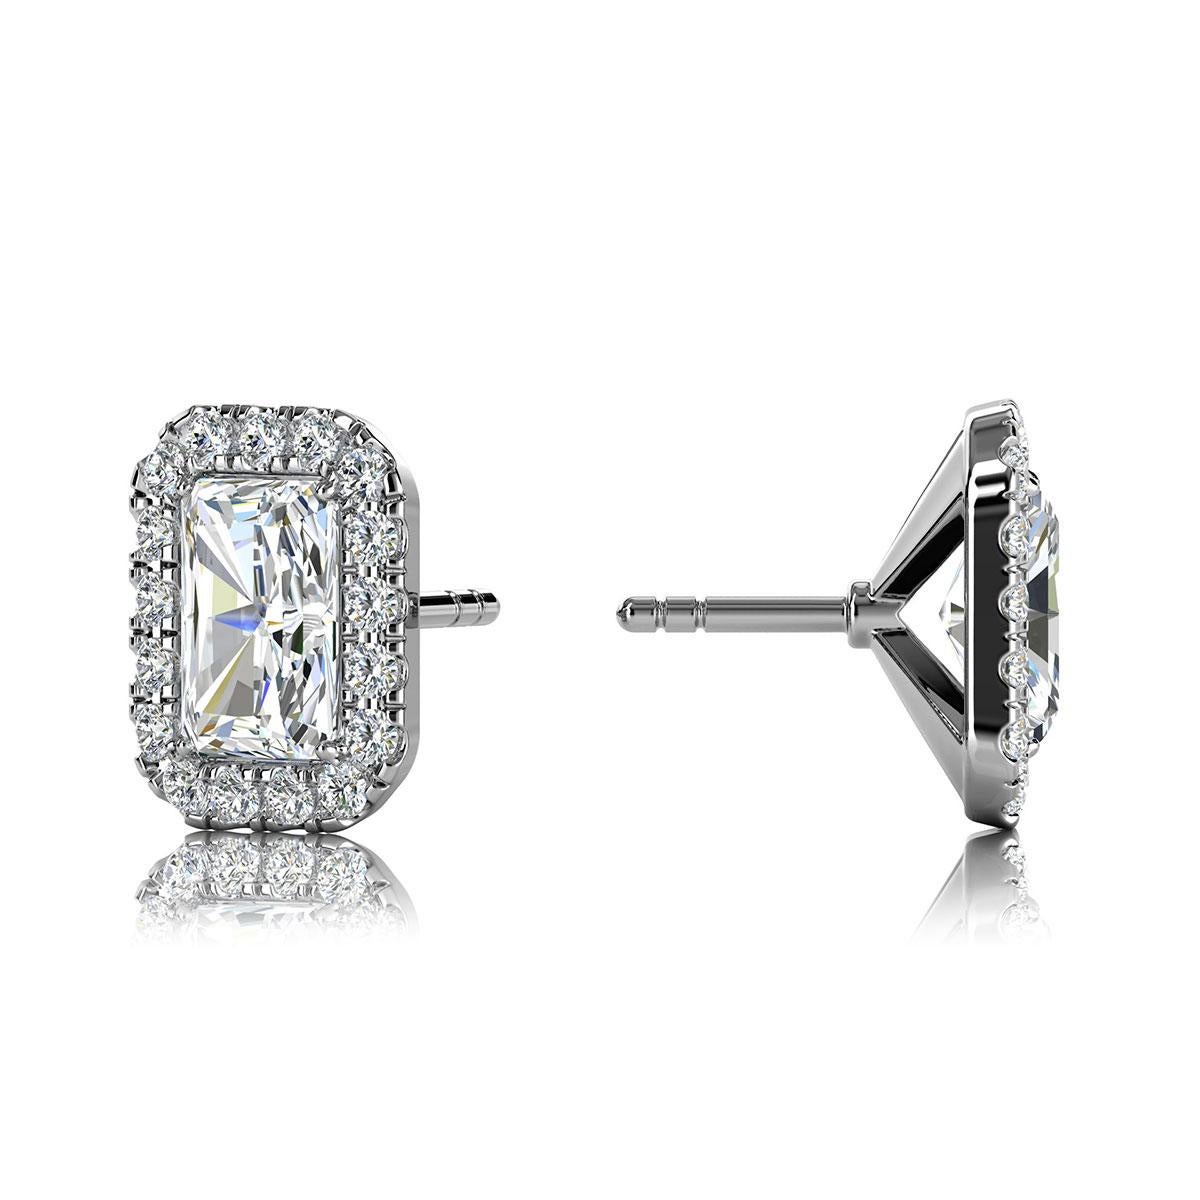 1/2 carat vs 1 carat diamond earrings